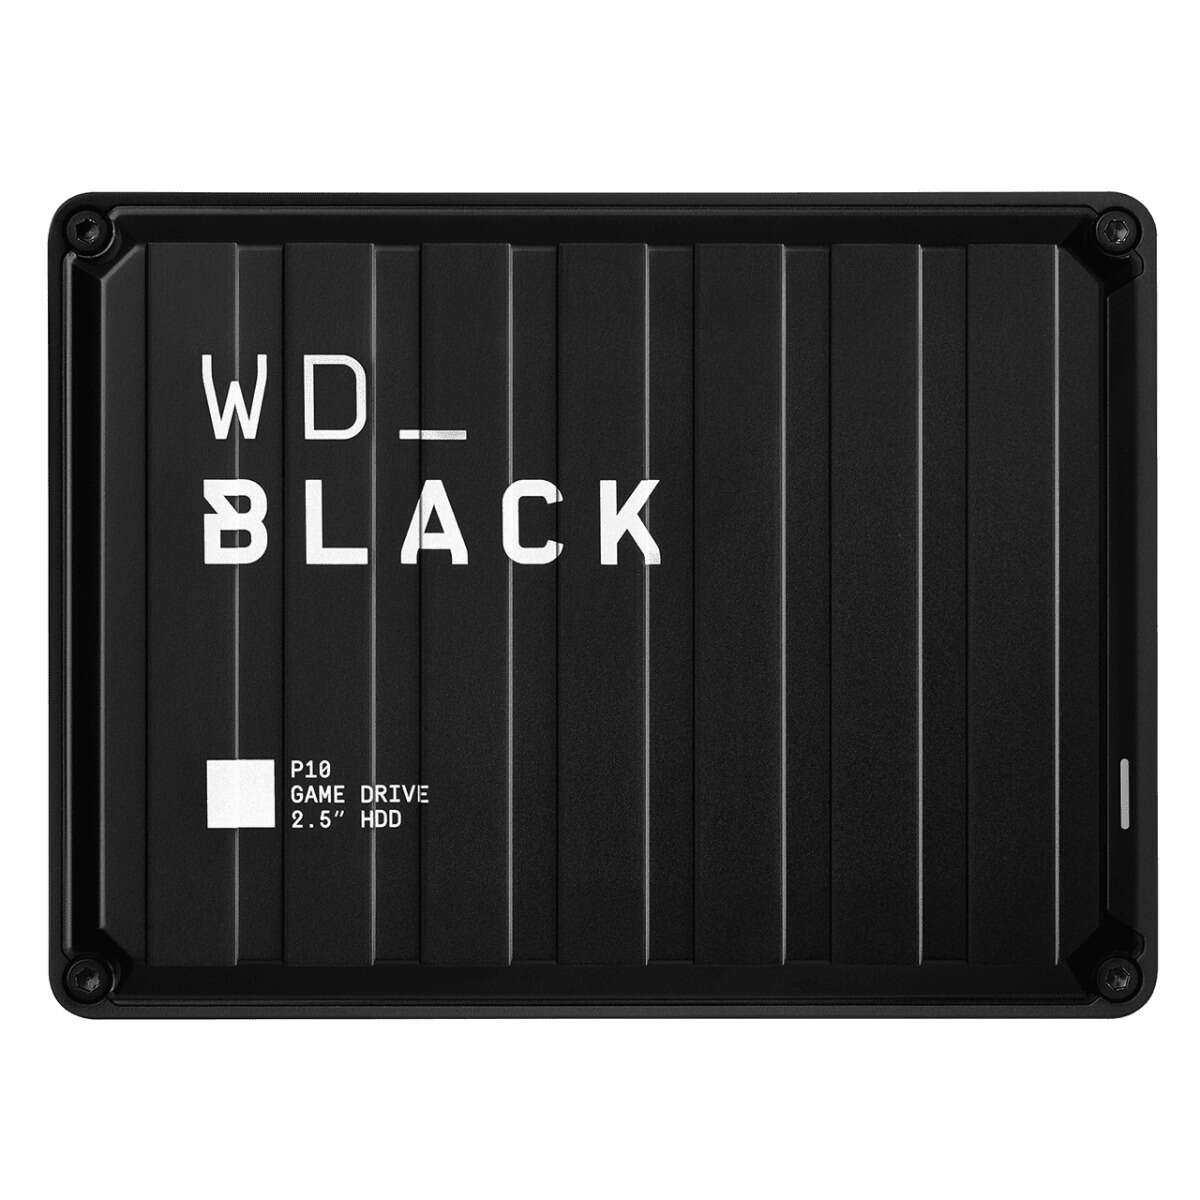 Western digital p10 game drive 2000 gb fekete külső merevlemez